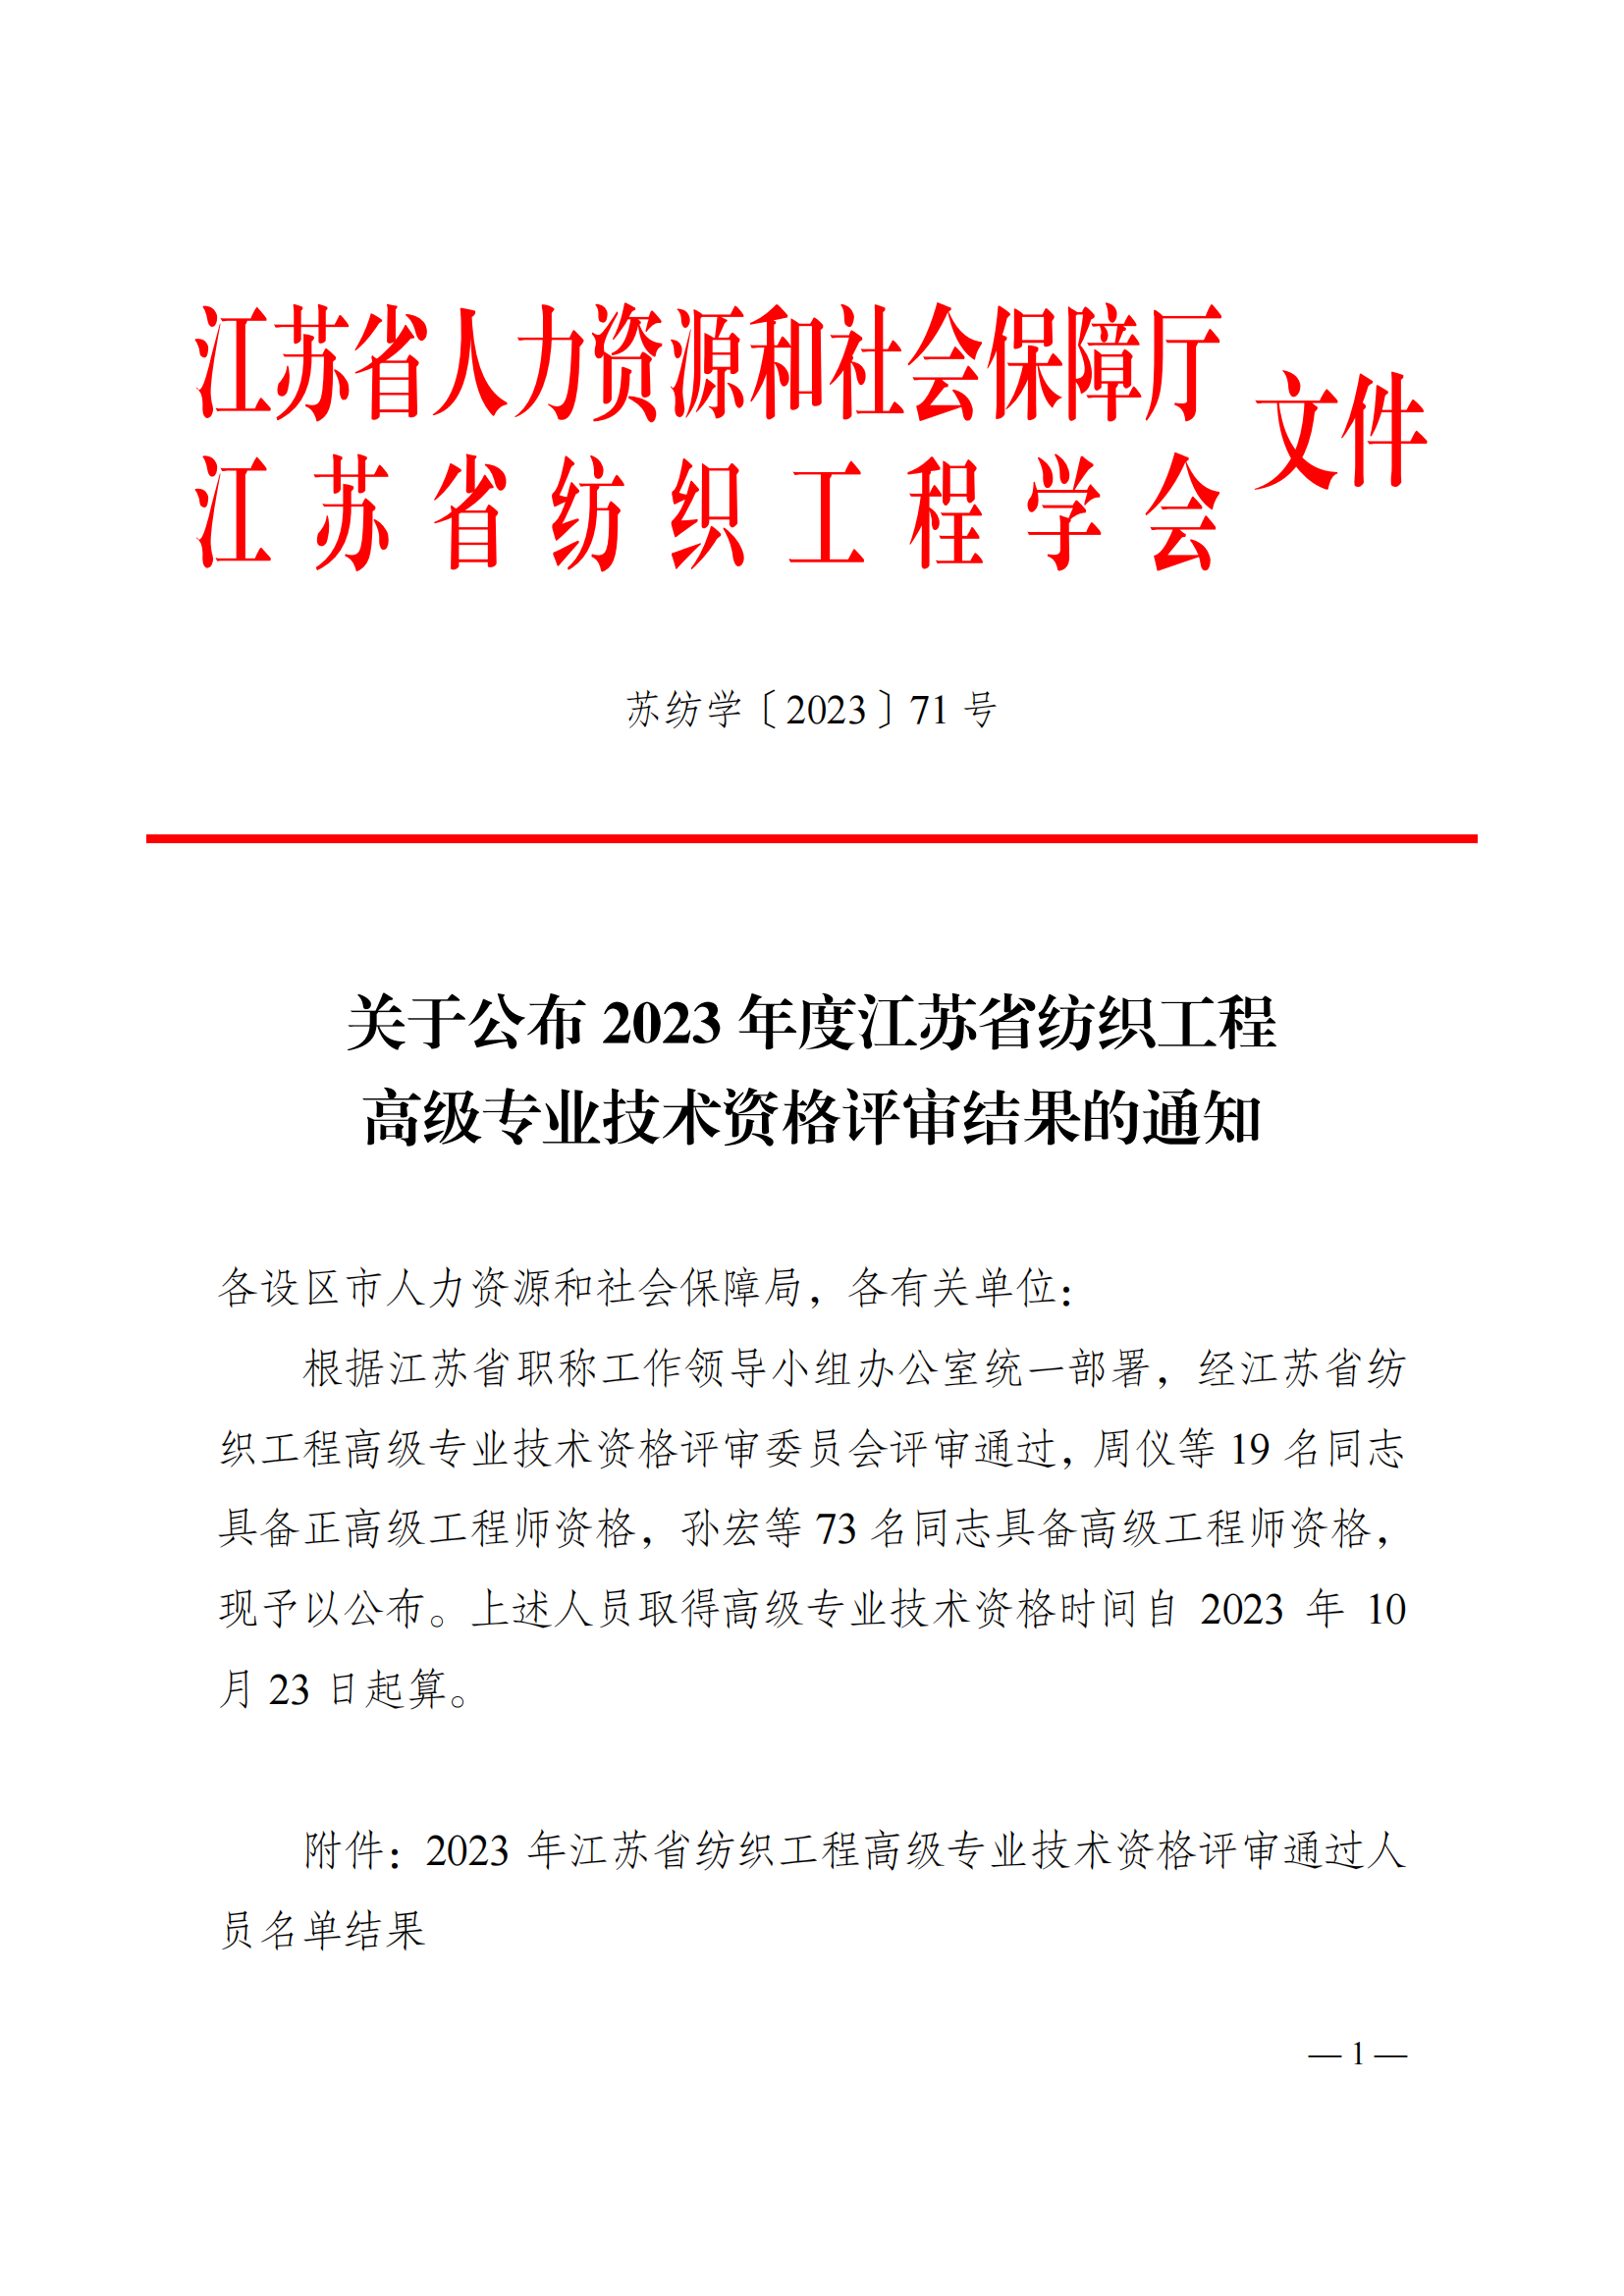 关于公布2023年度江苏省纺织工程高级专业技术资格评审结果的通知(打印版)_00.png